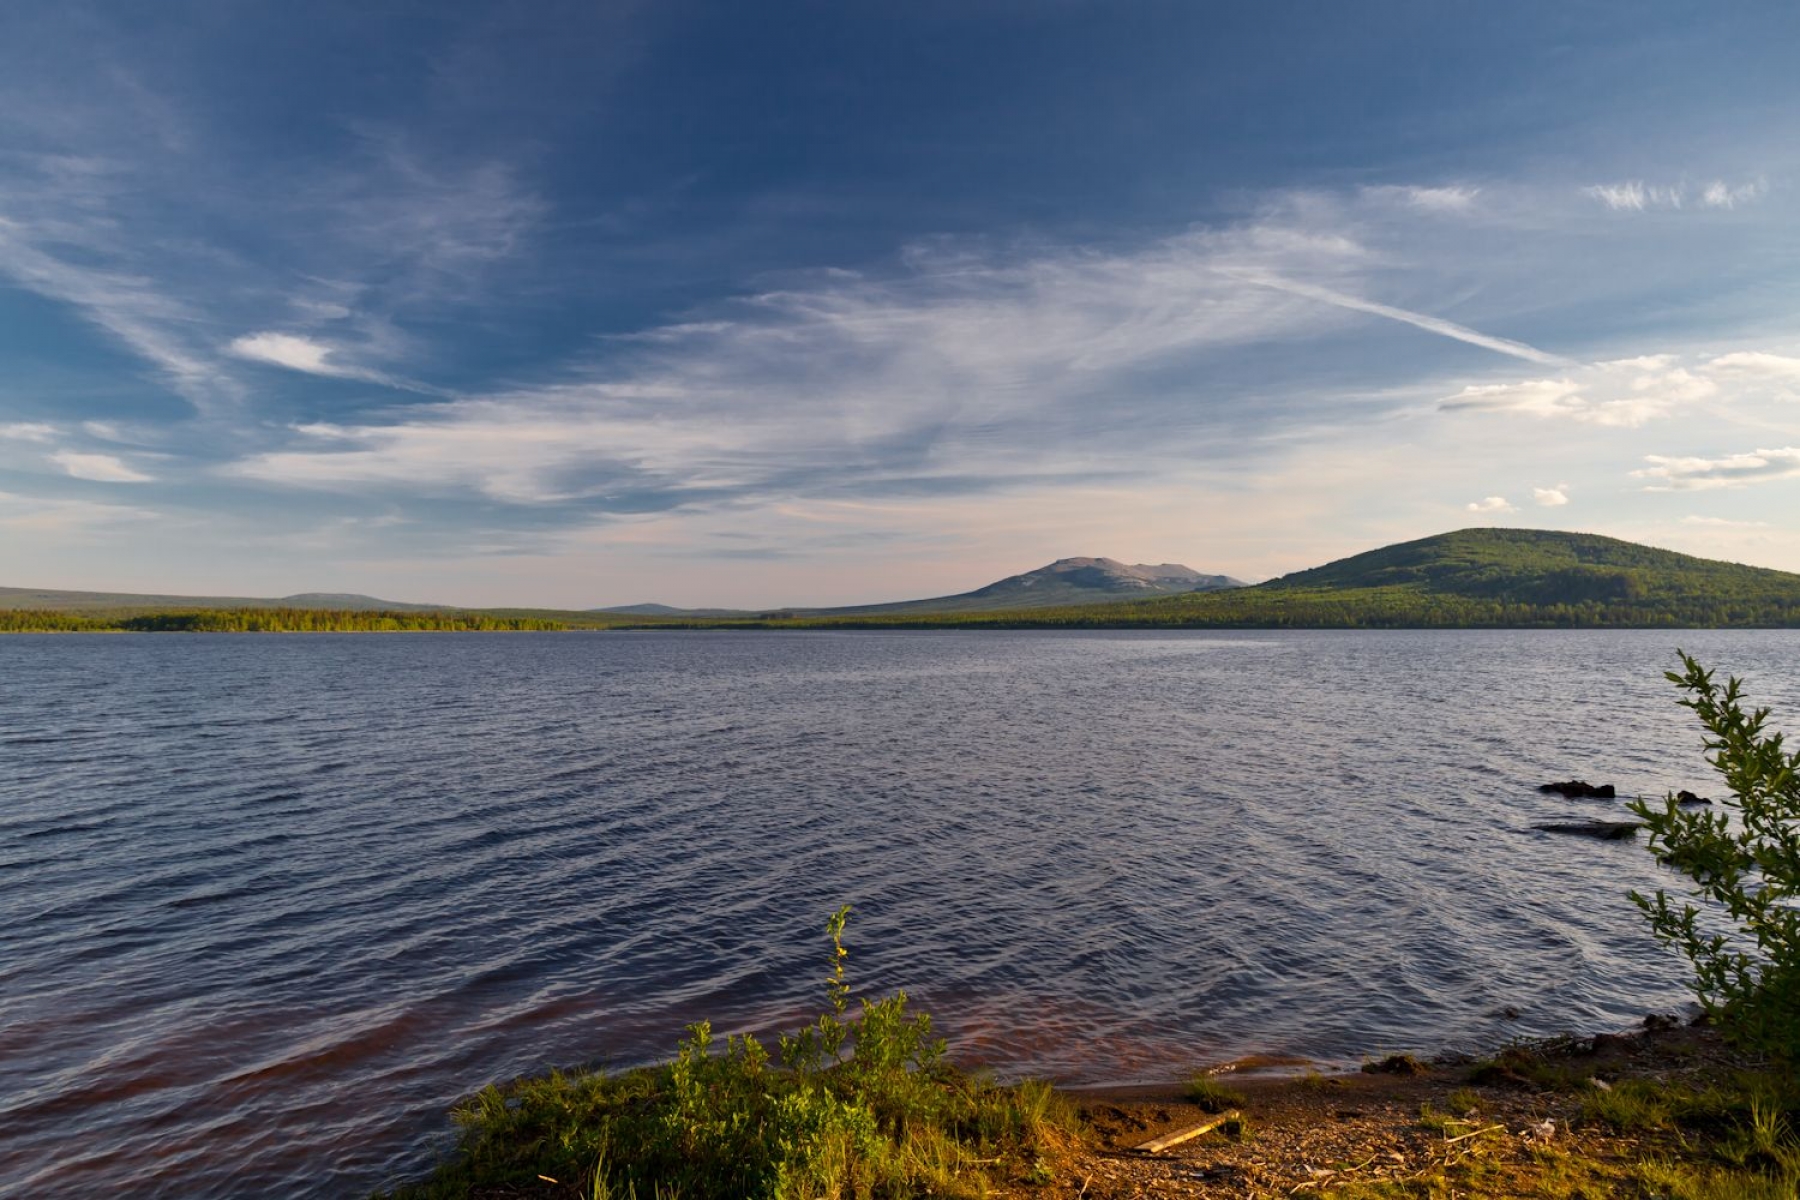 Озеро зюраткуль челябинская